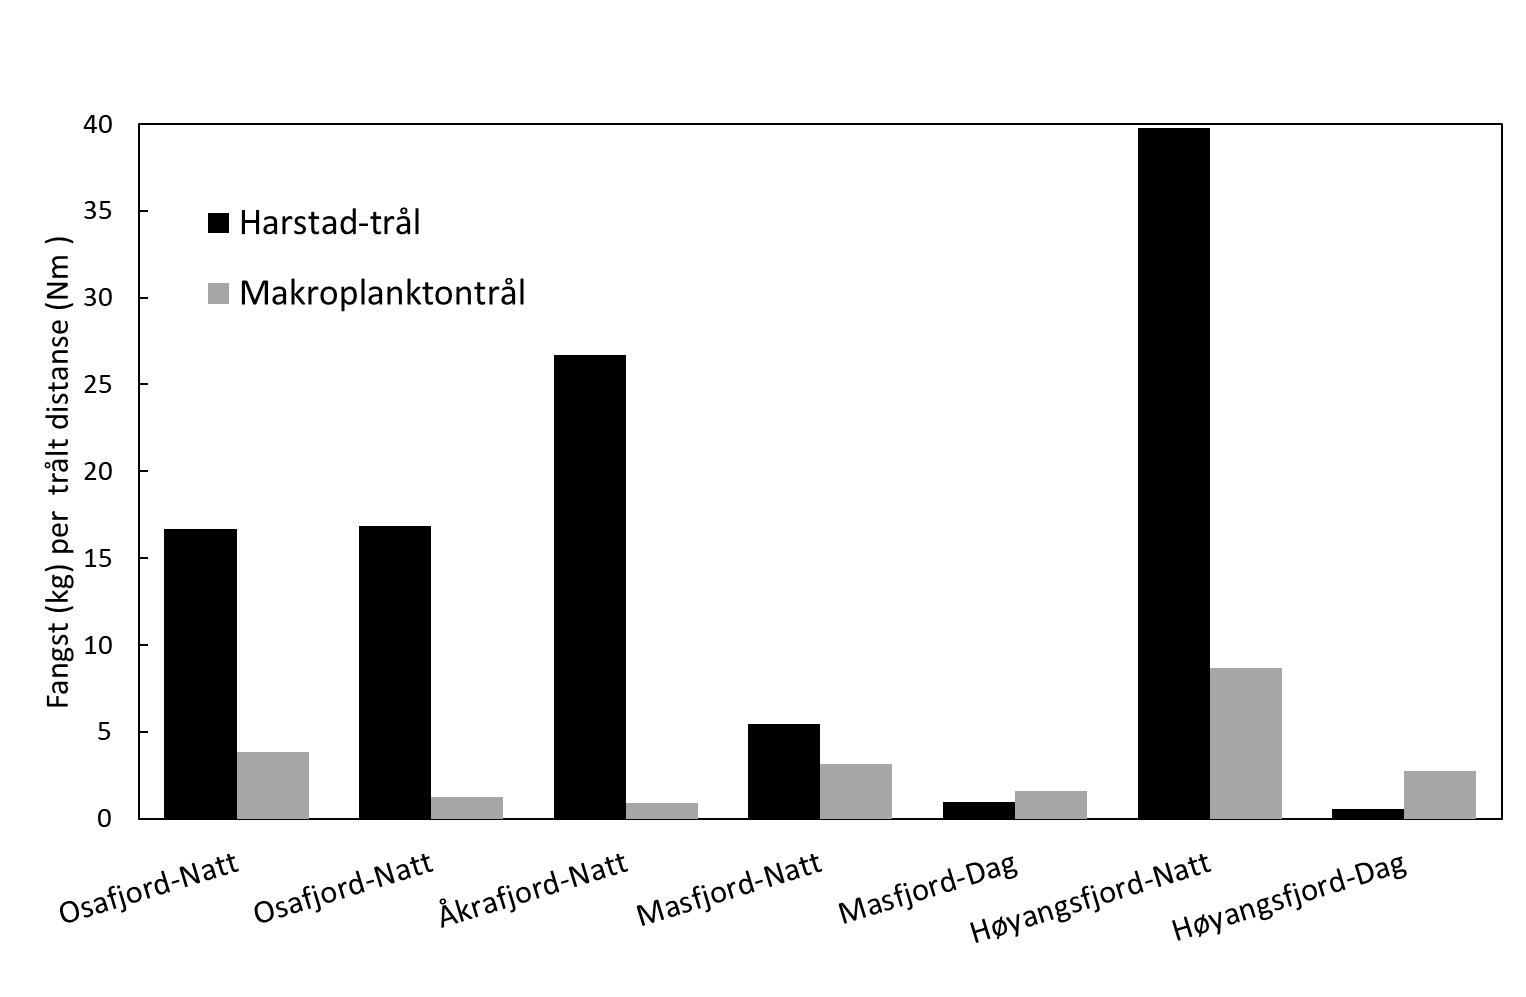 Figuren viser et stolpediagram over fangster av norsk storkrill der fjordene er listet langs x-aksen (fjord + dag eller natt) og y-aksen viser fangst (0-40 kg per trålt distanse (nautiske mil)). Stolpene viser data for de to pelagiske trålene harstad-trål (svart) og makroplanktontrål (grå).